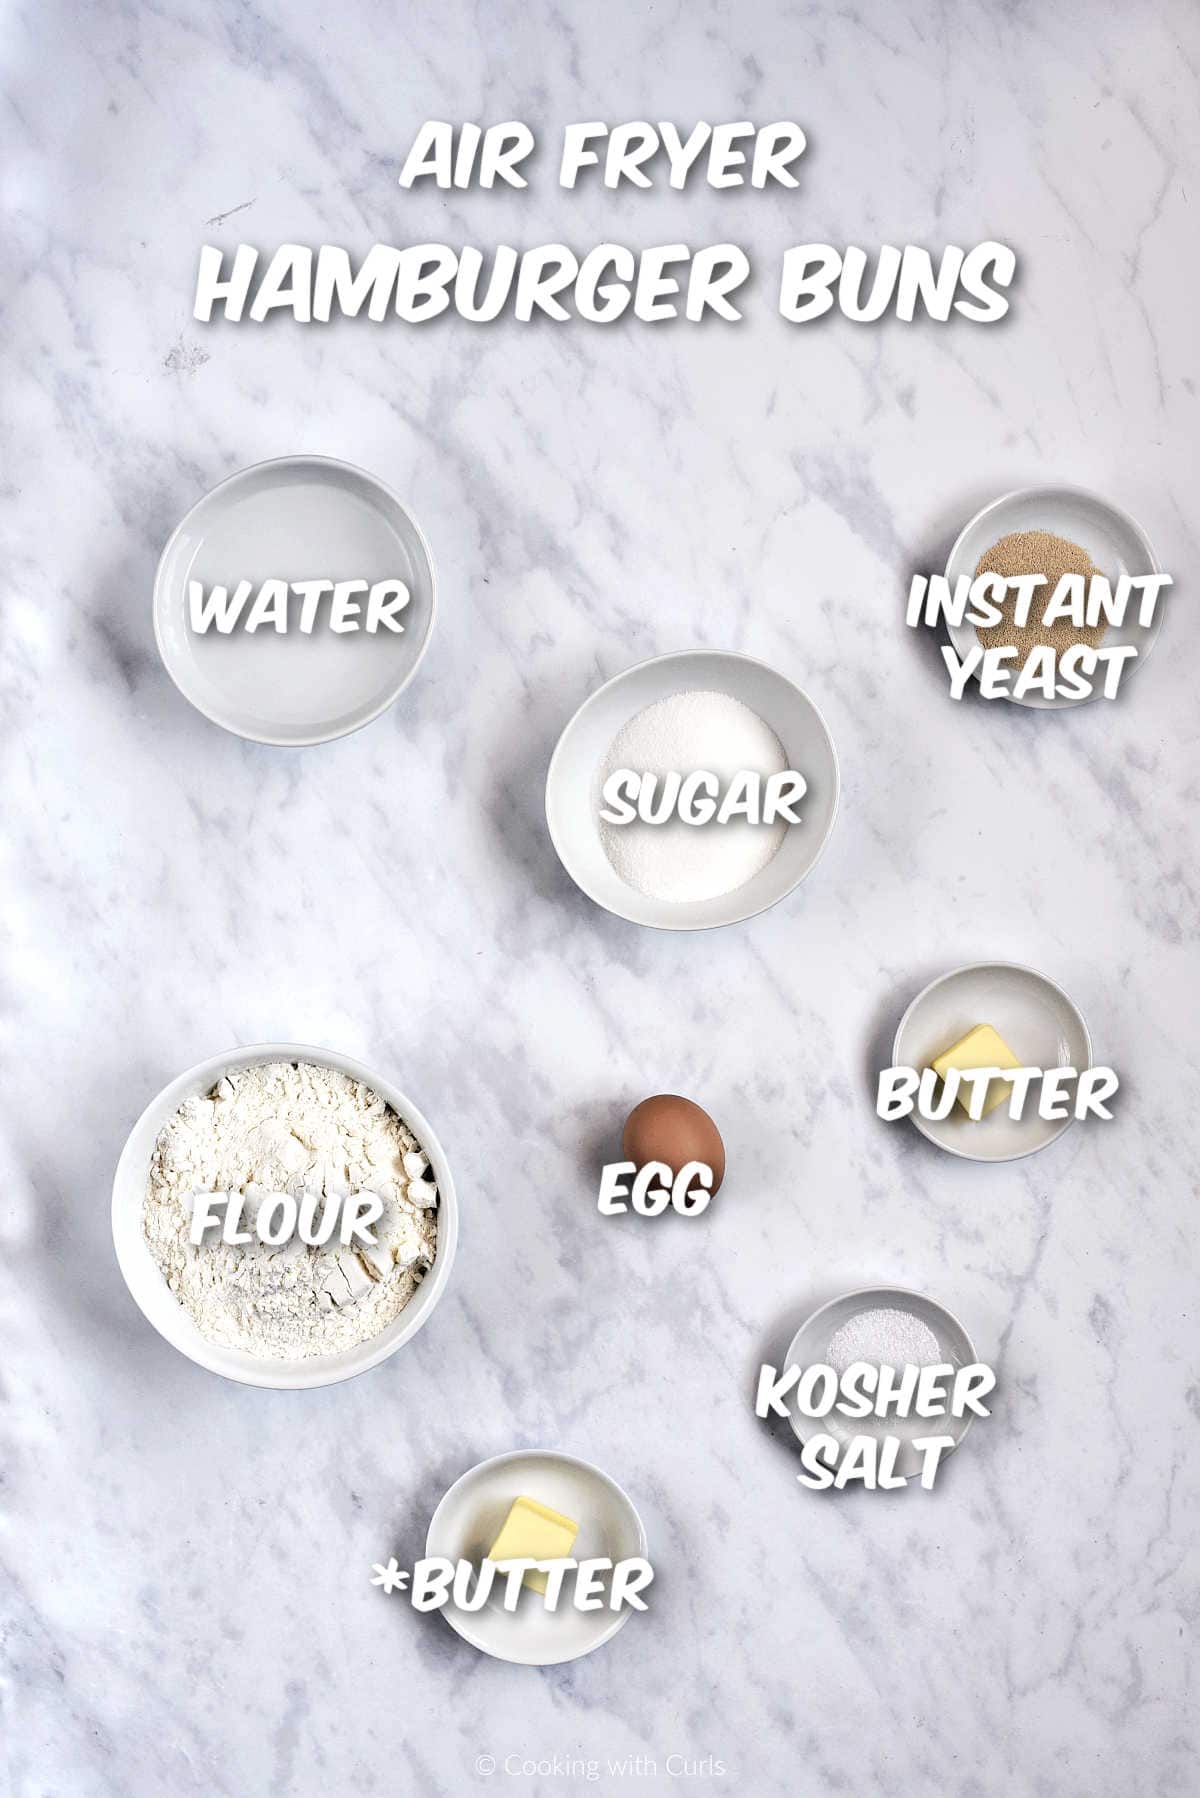 Ingredients to make air fryer hamburger buns.